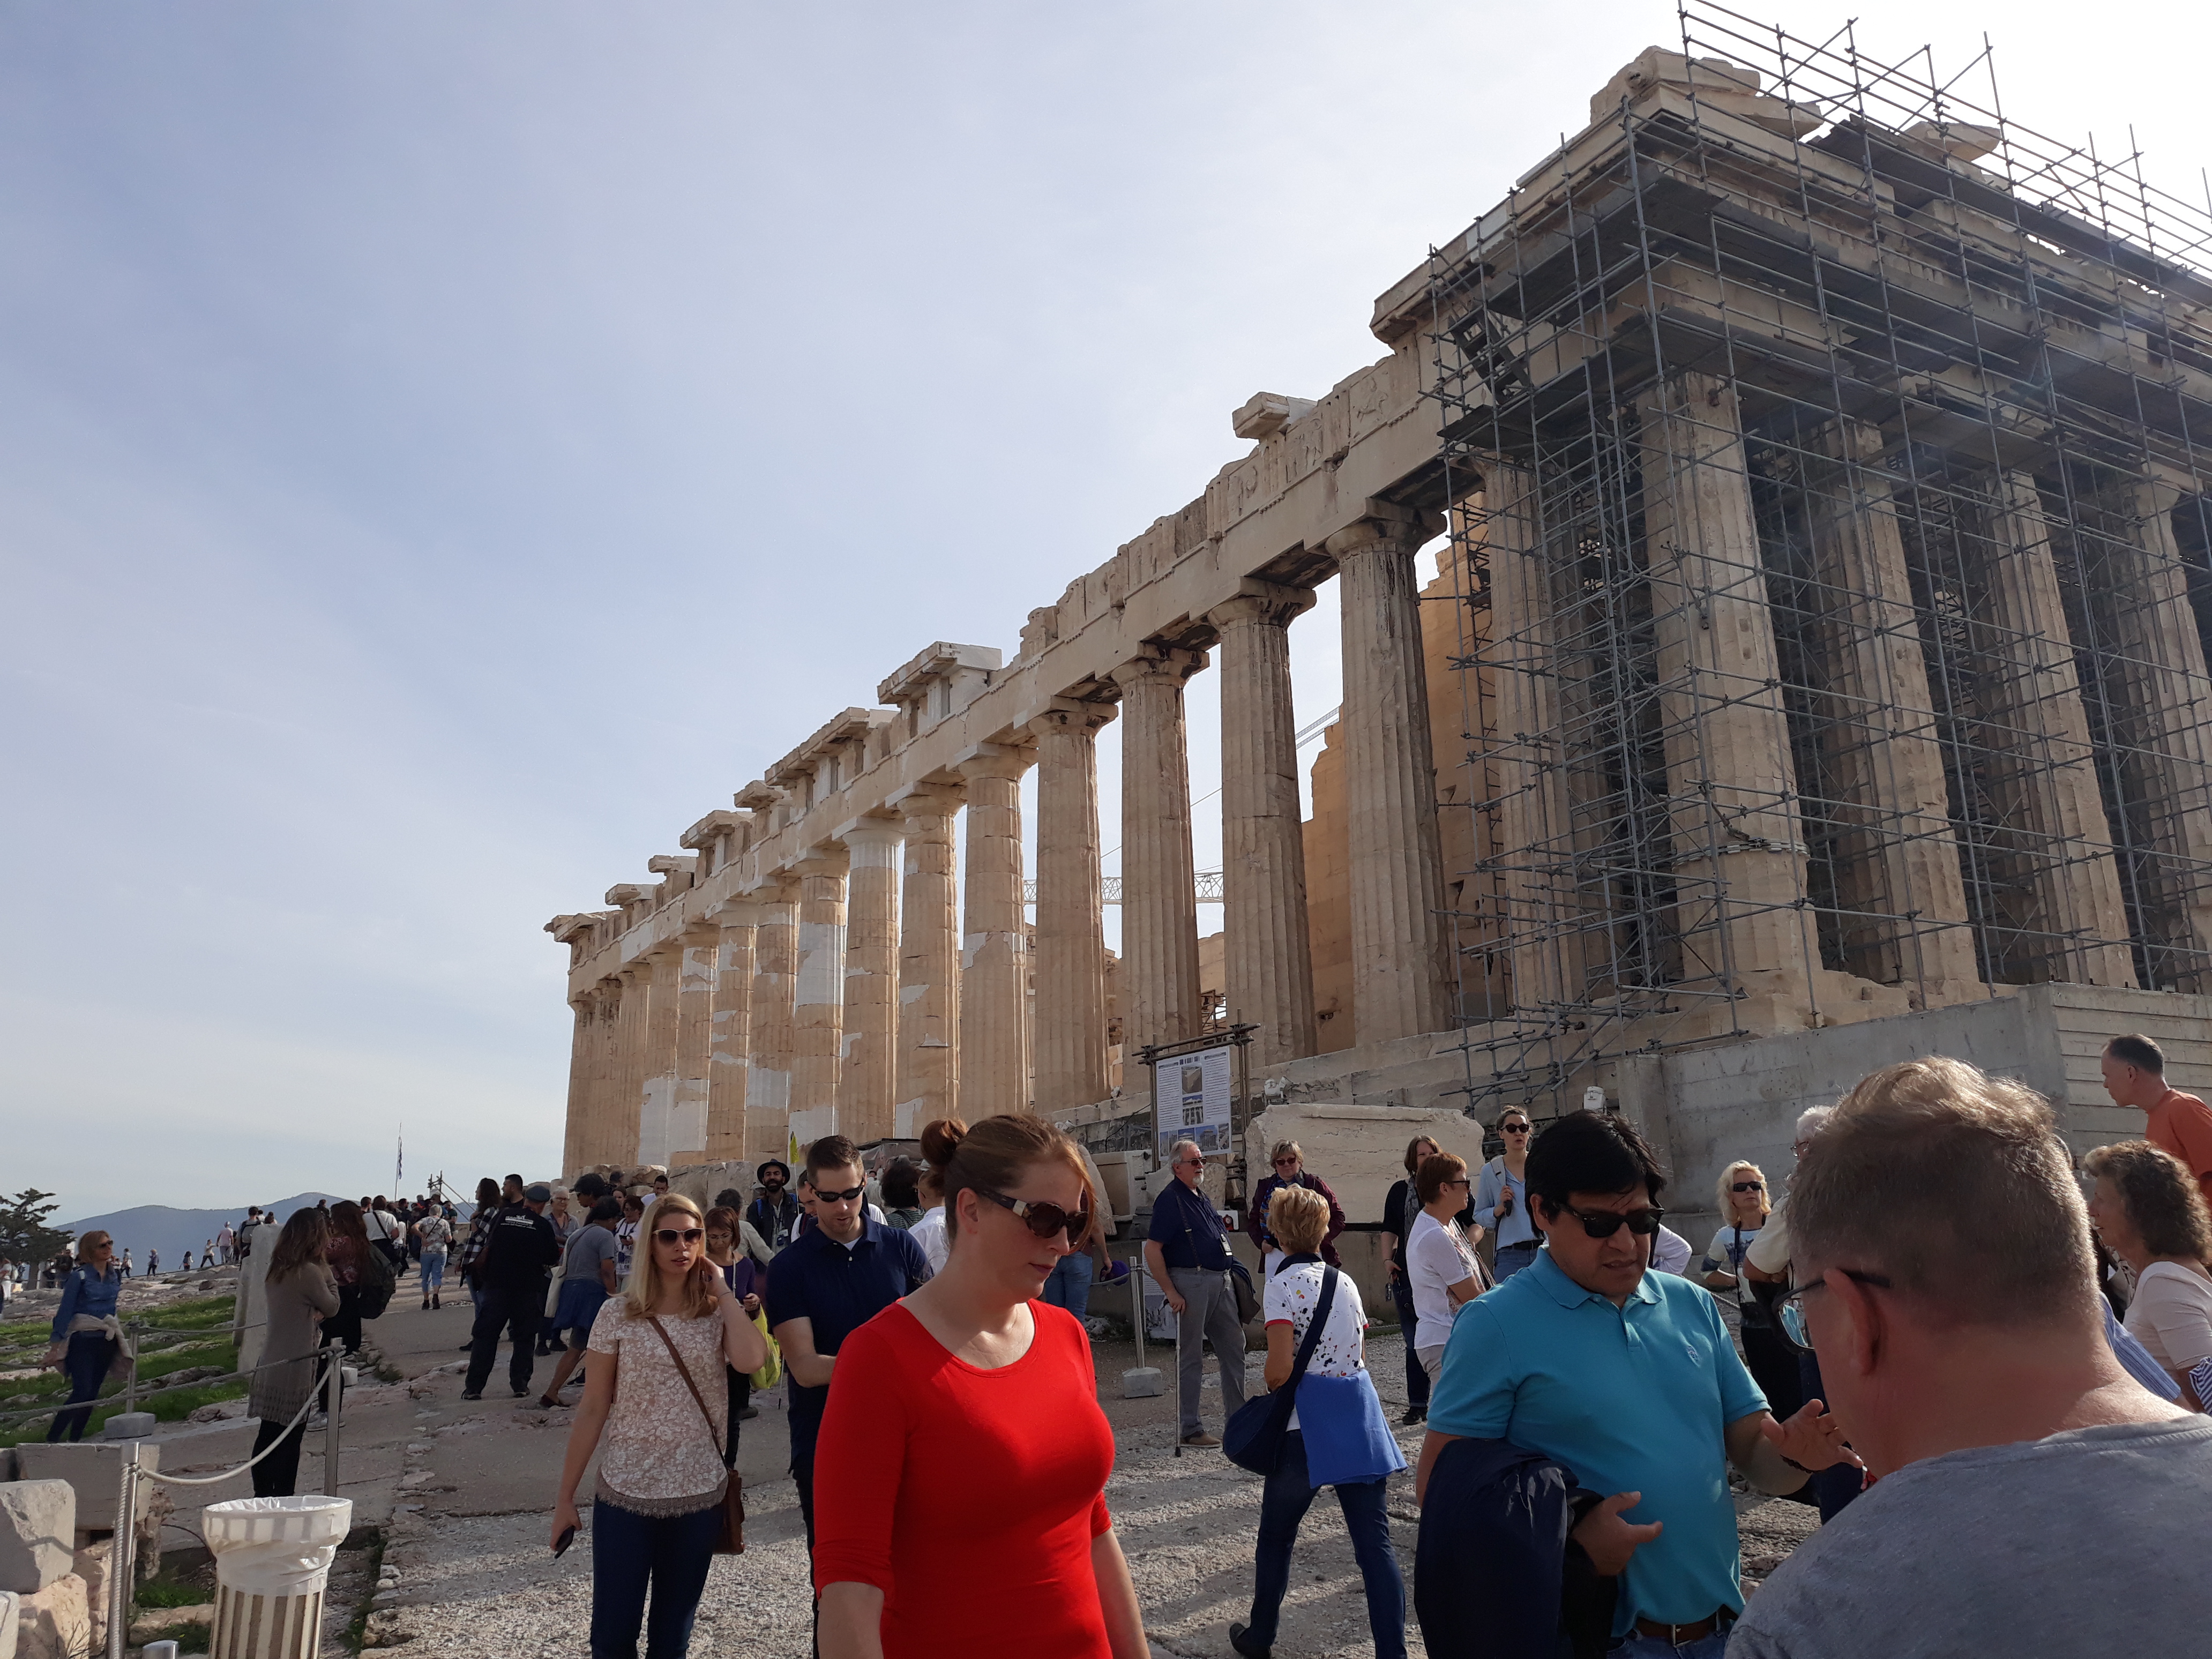 Akropolisz Parthenon, kerékpártúrához társakat keresek